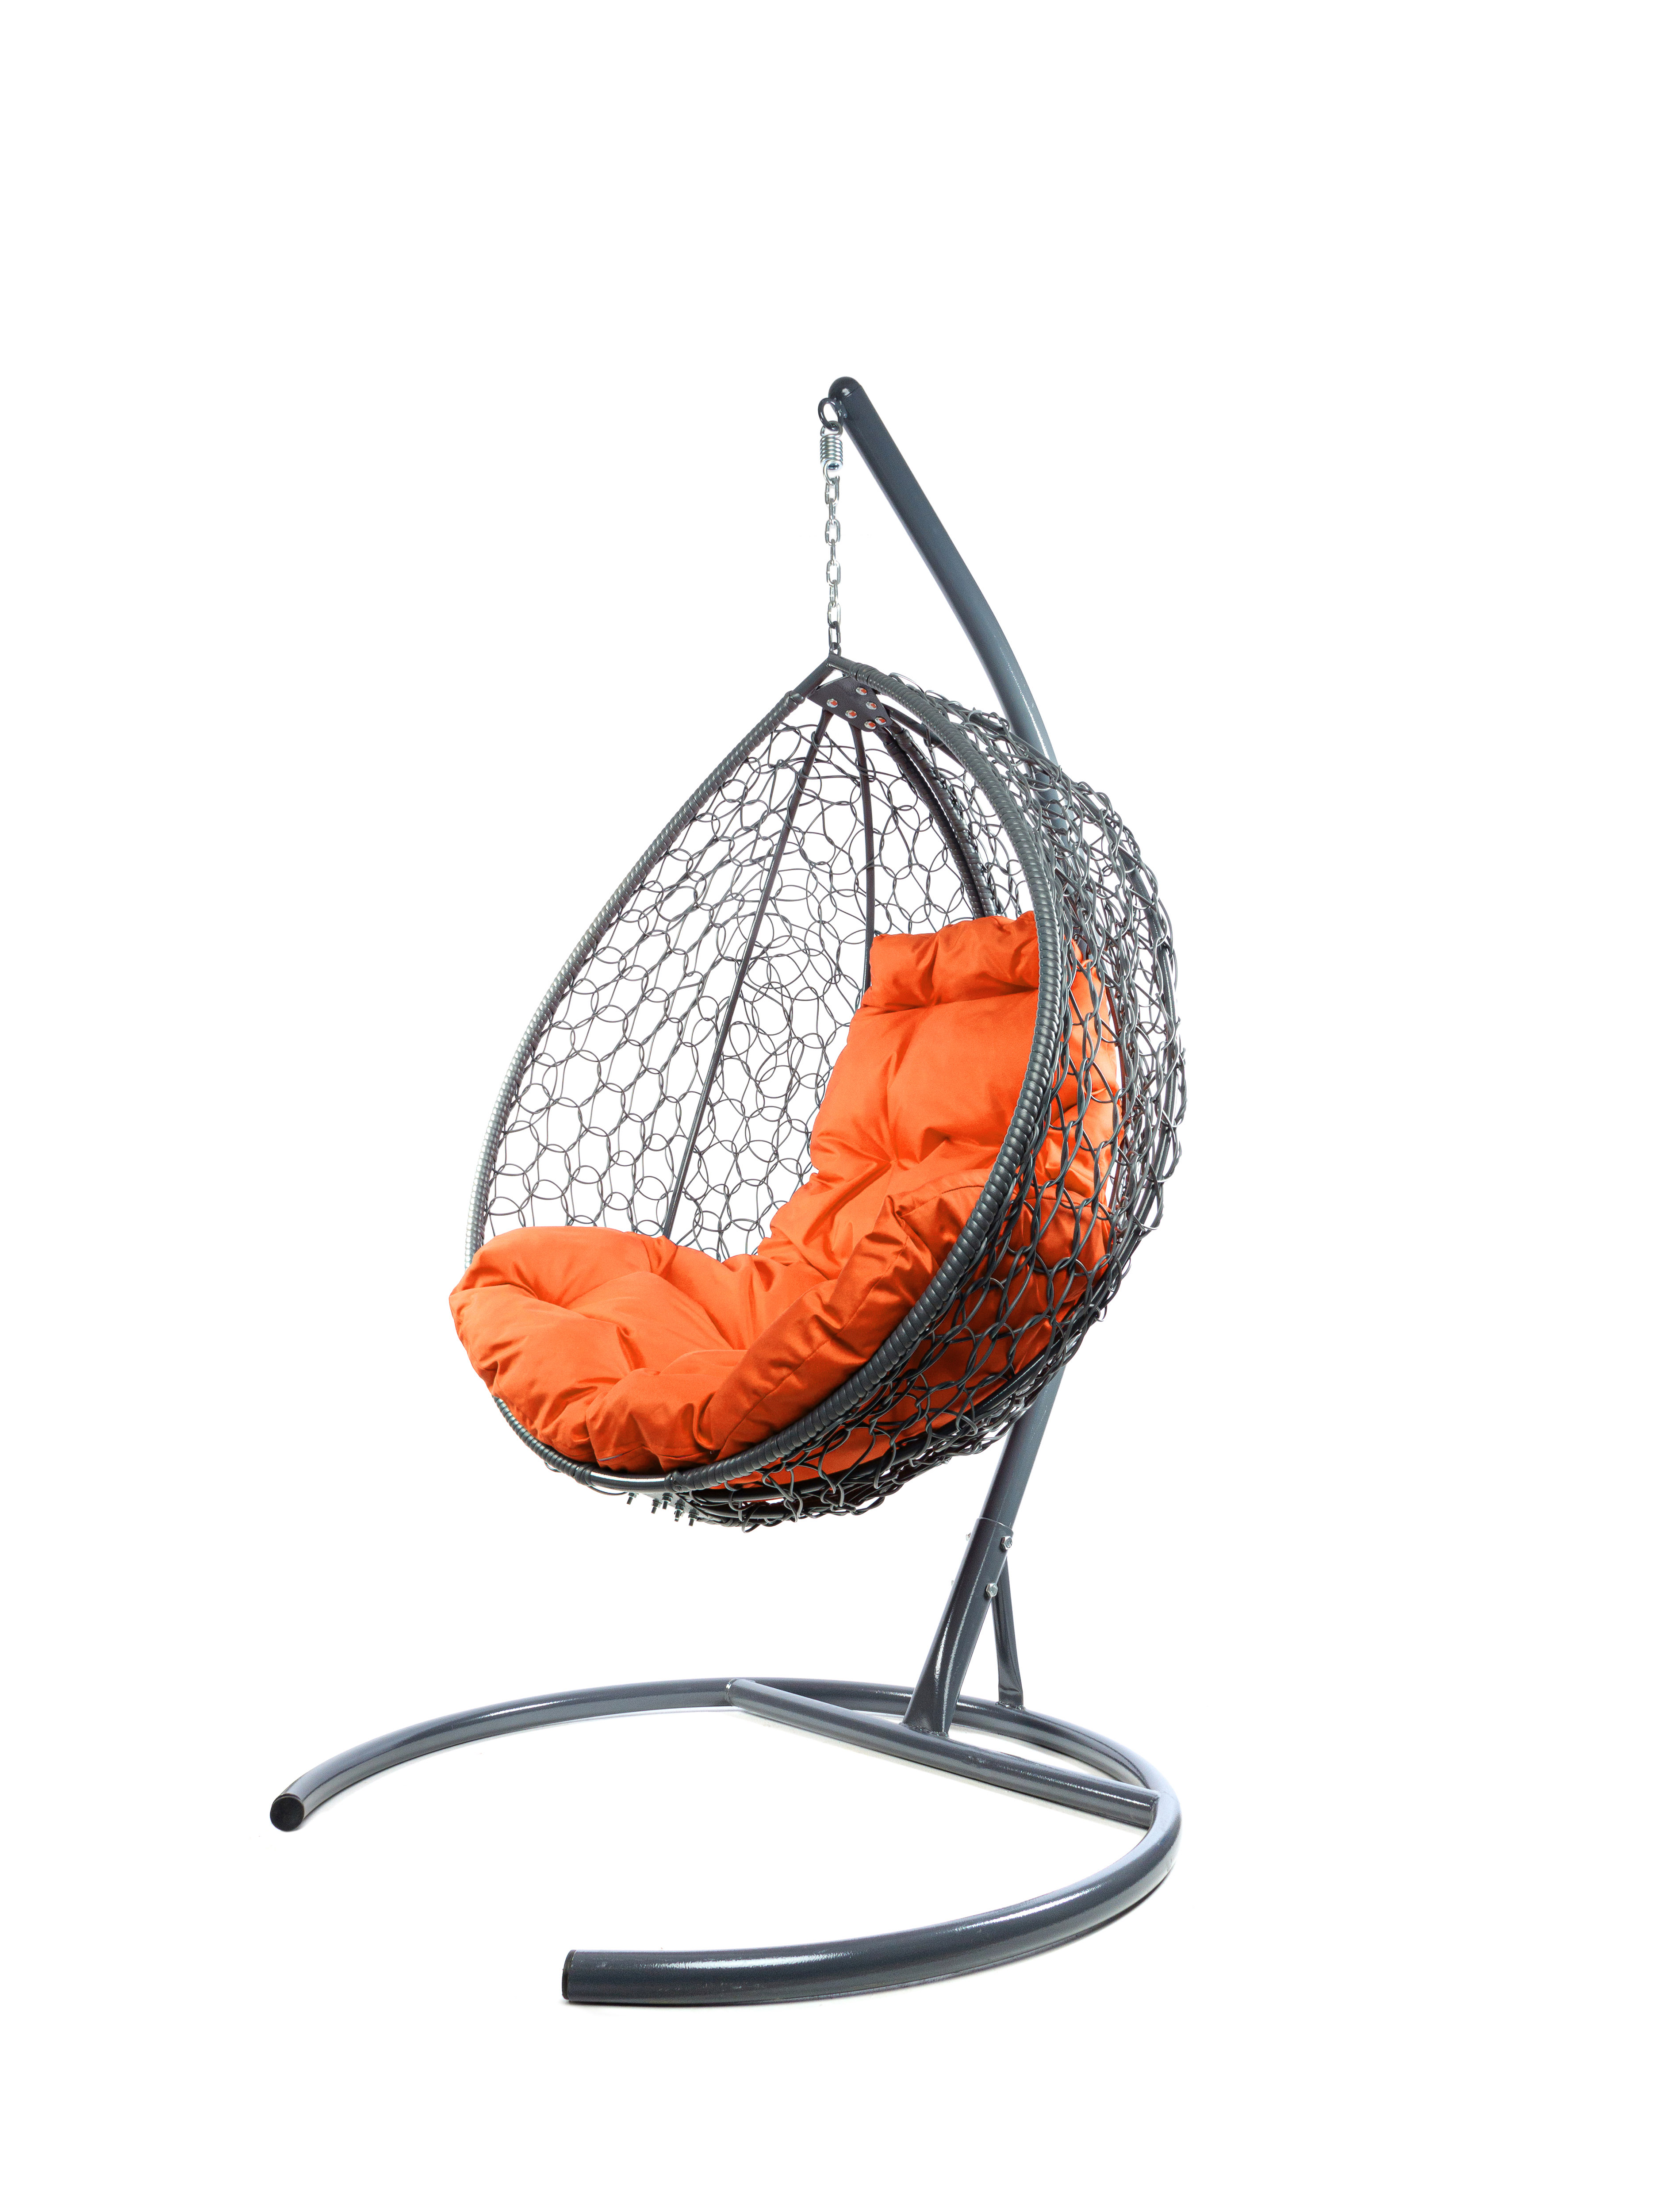 Подвесное кресло серый M-Group Капля складное 11500307 оранжевая подушка